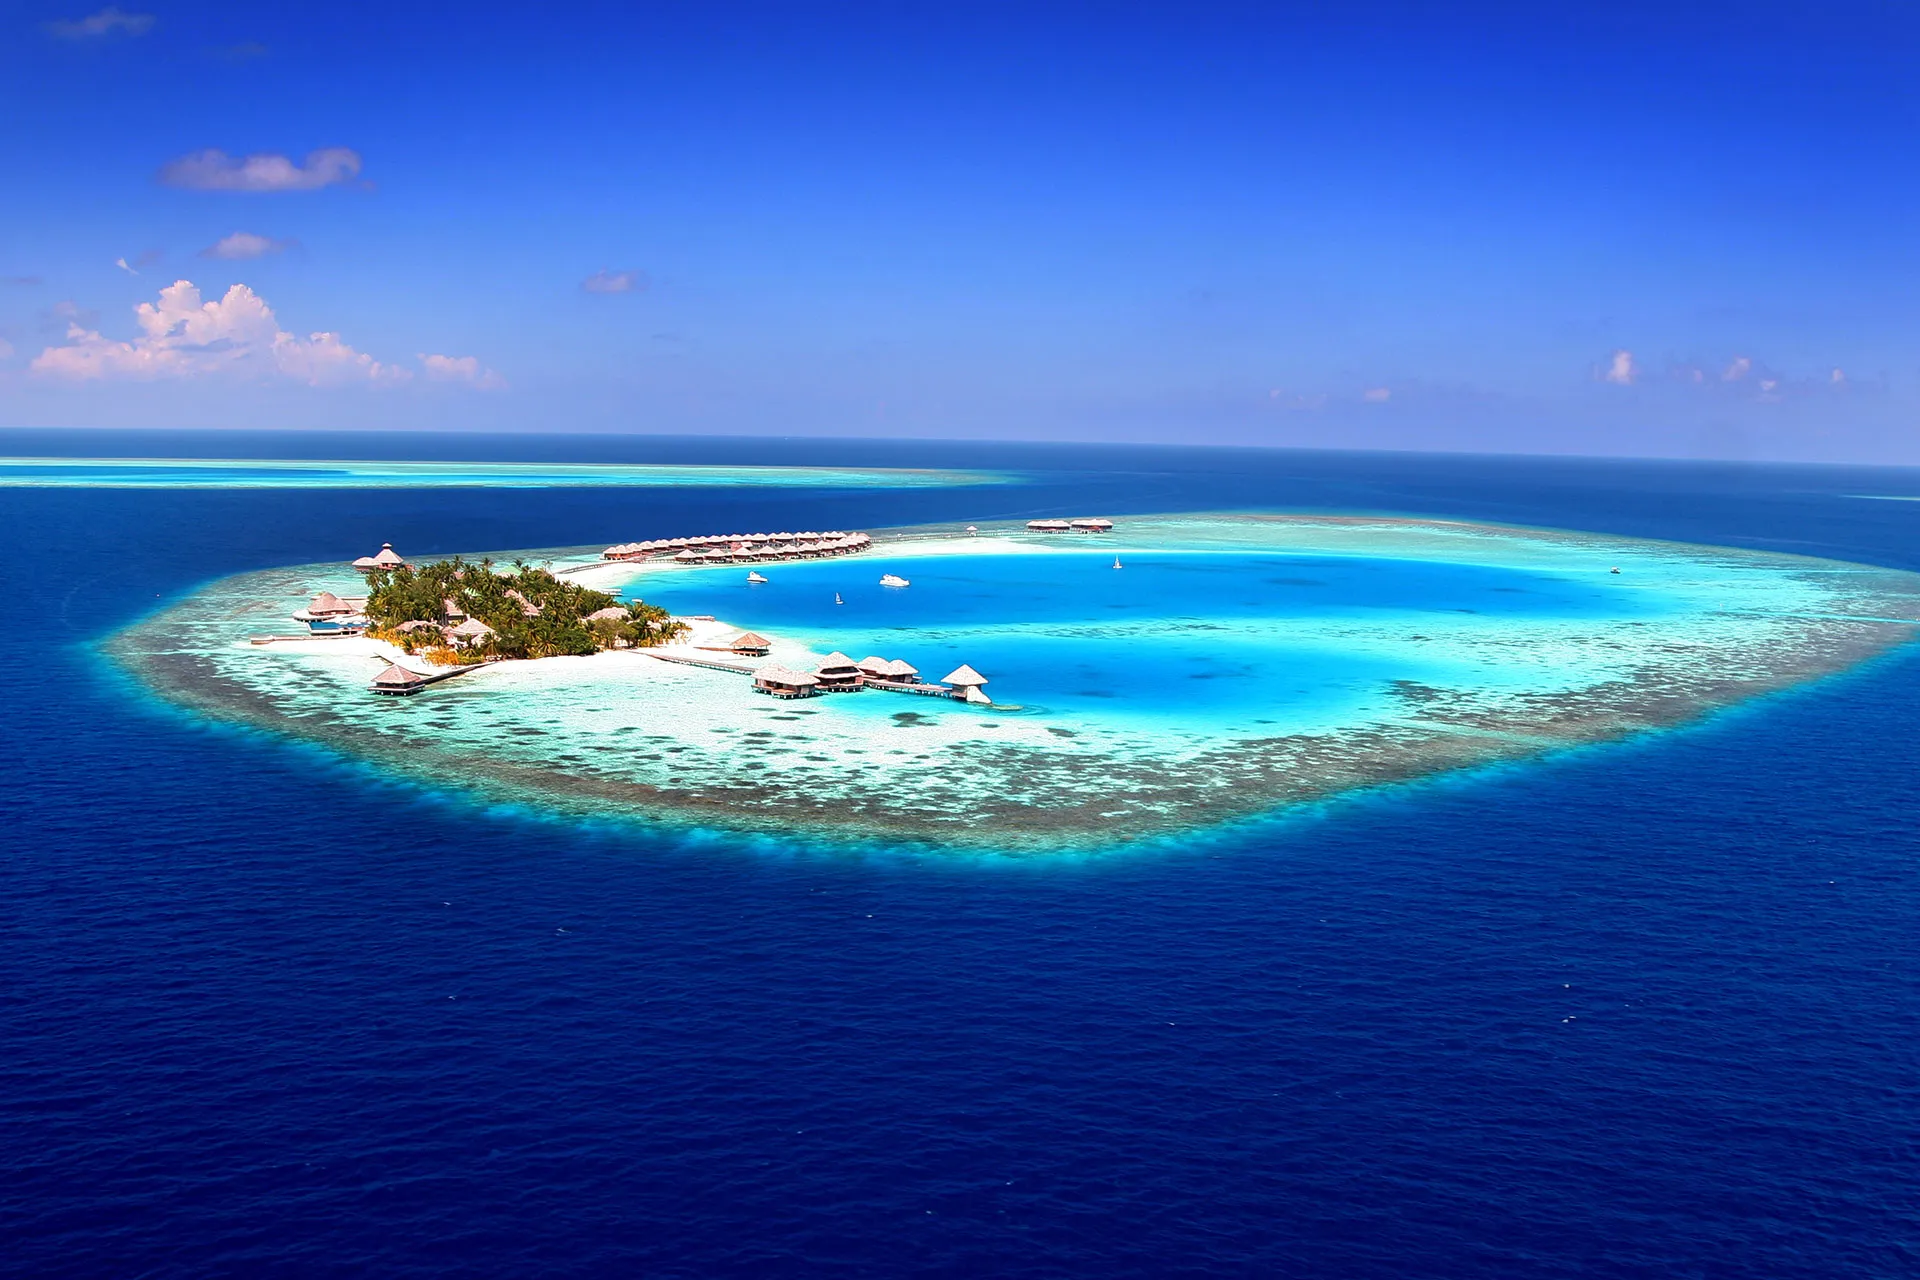 Maledivische Insel umgeben von großer Lagune